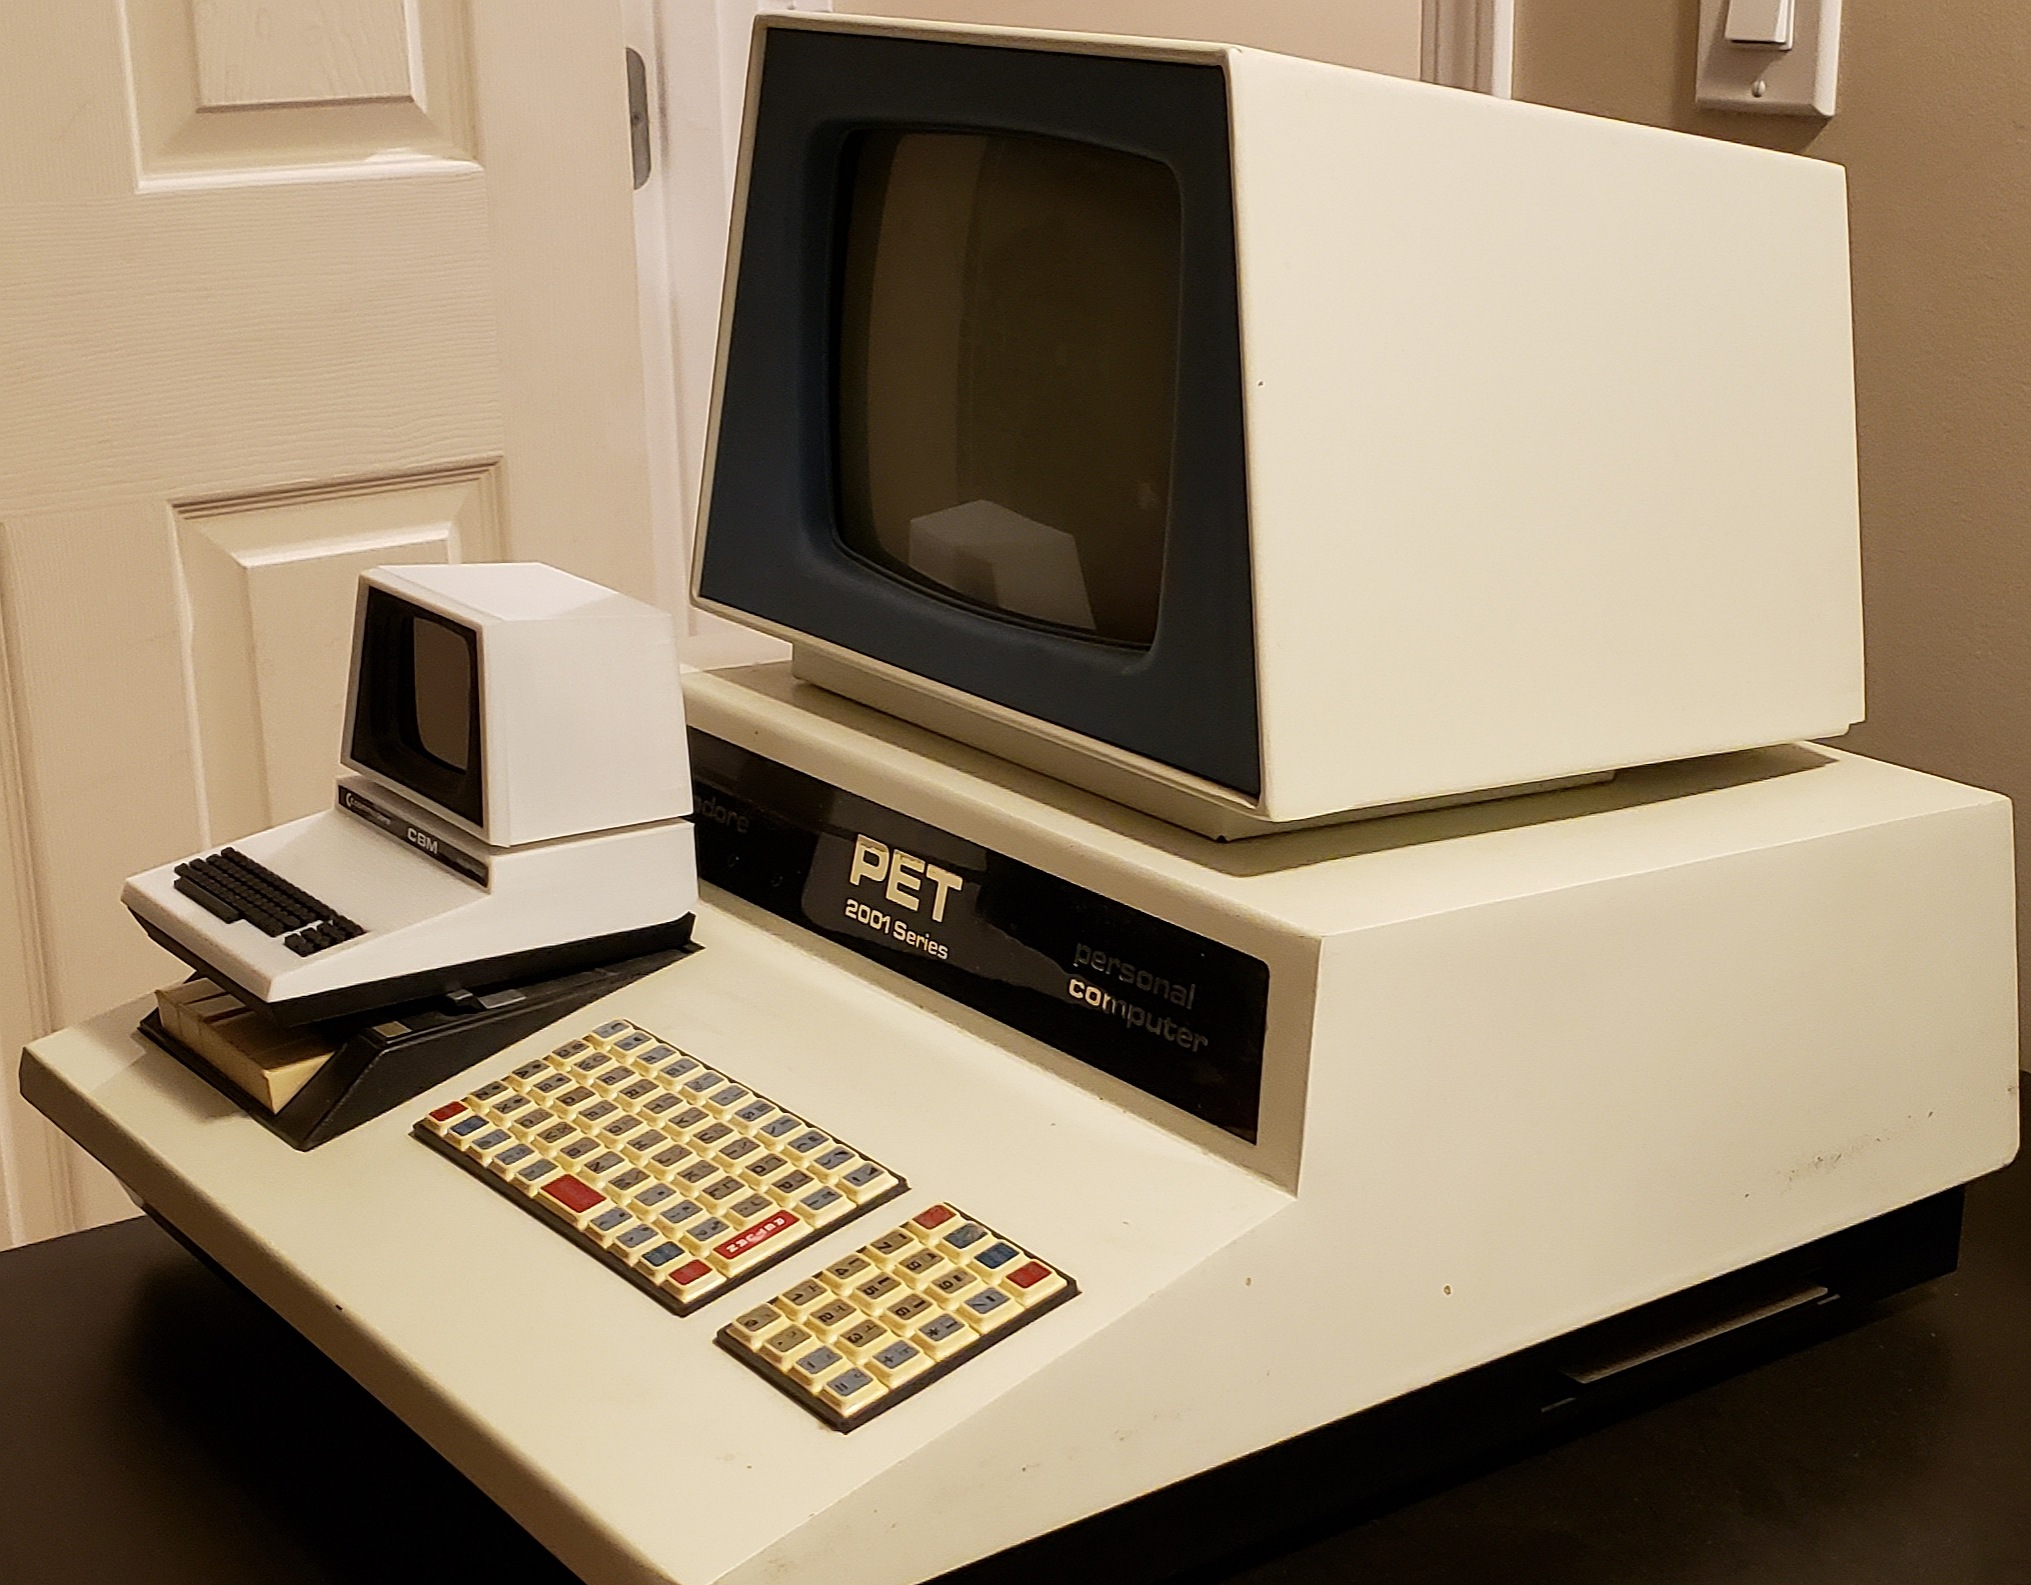 Commodore computers !